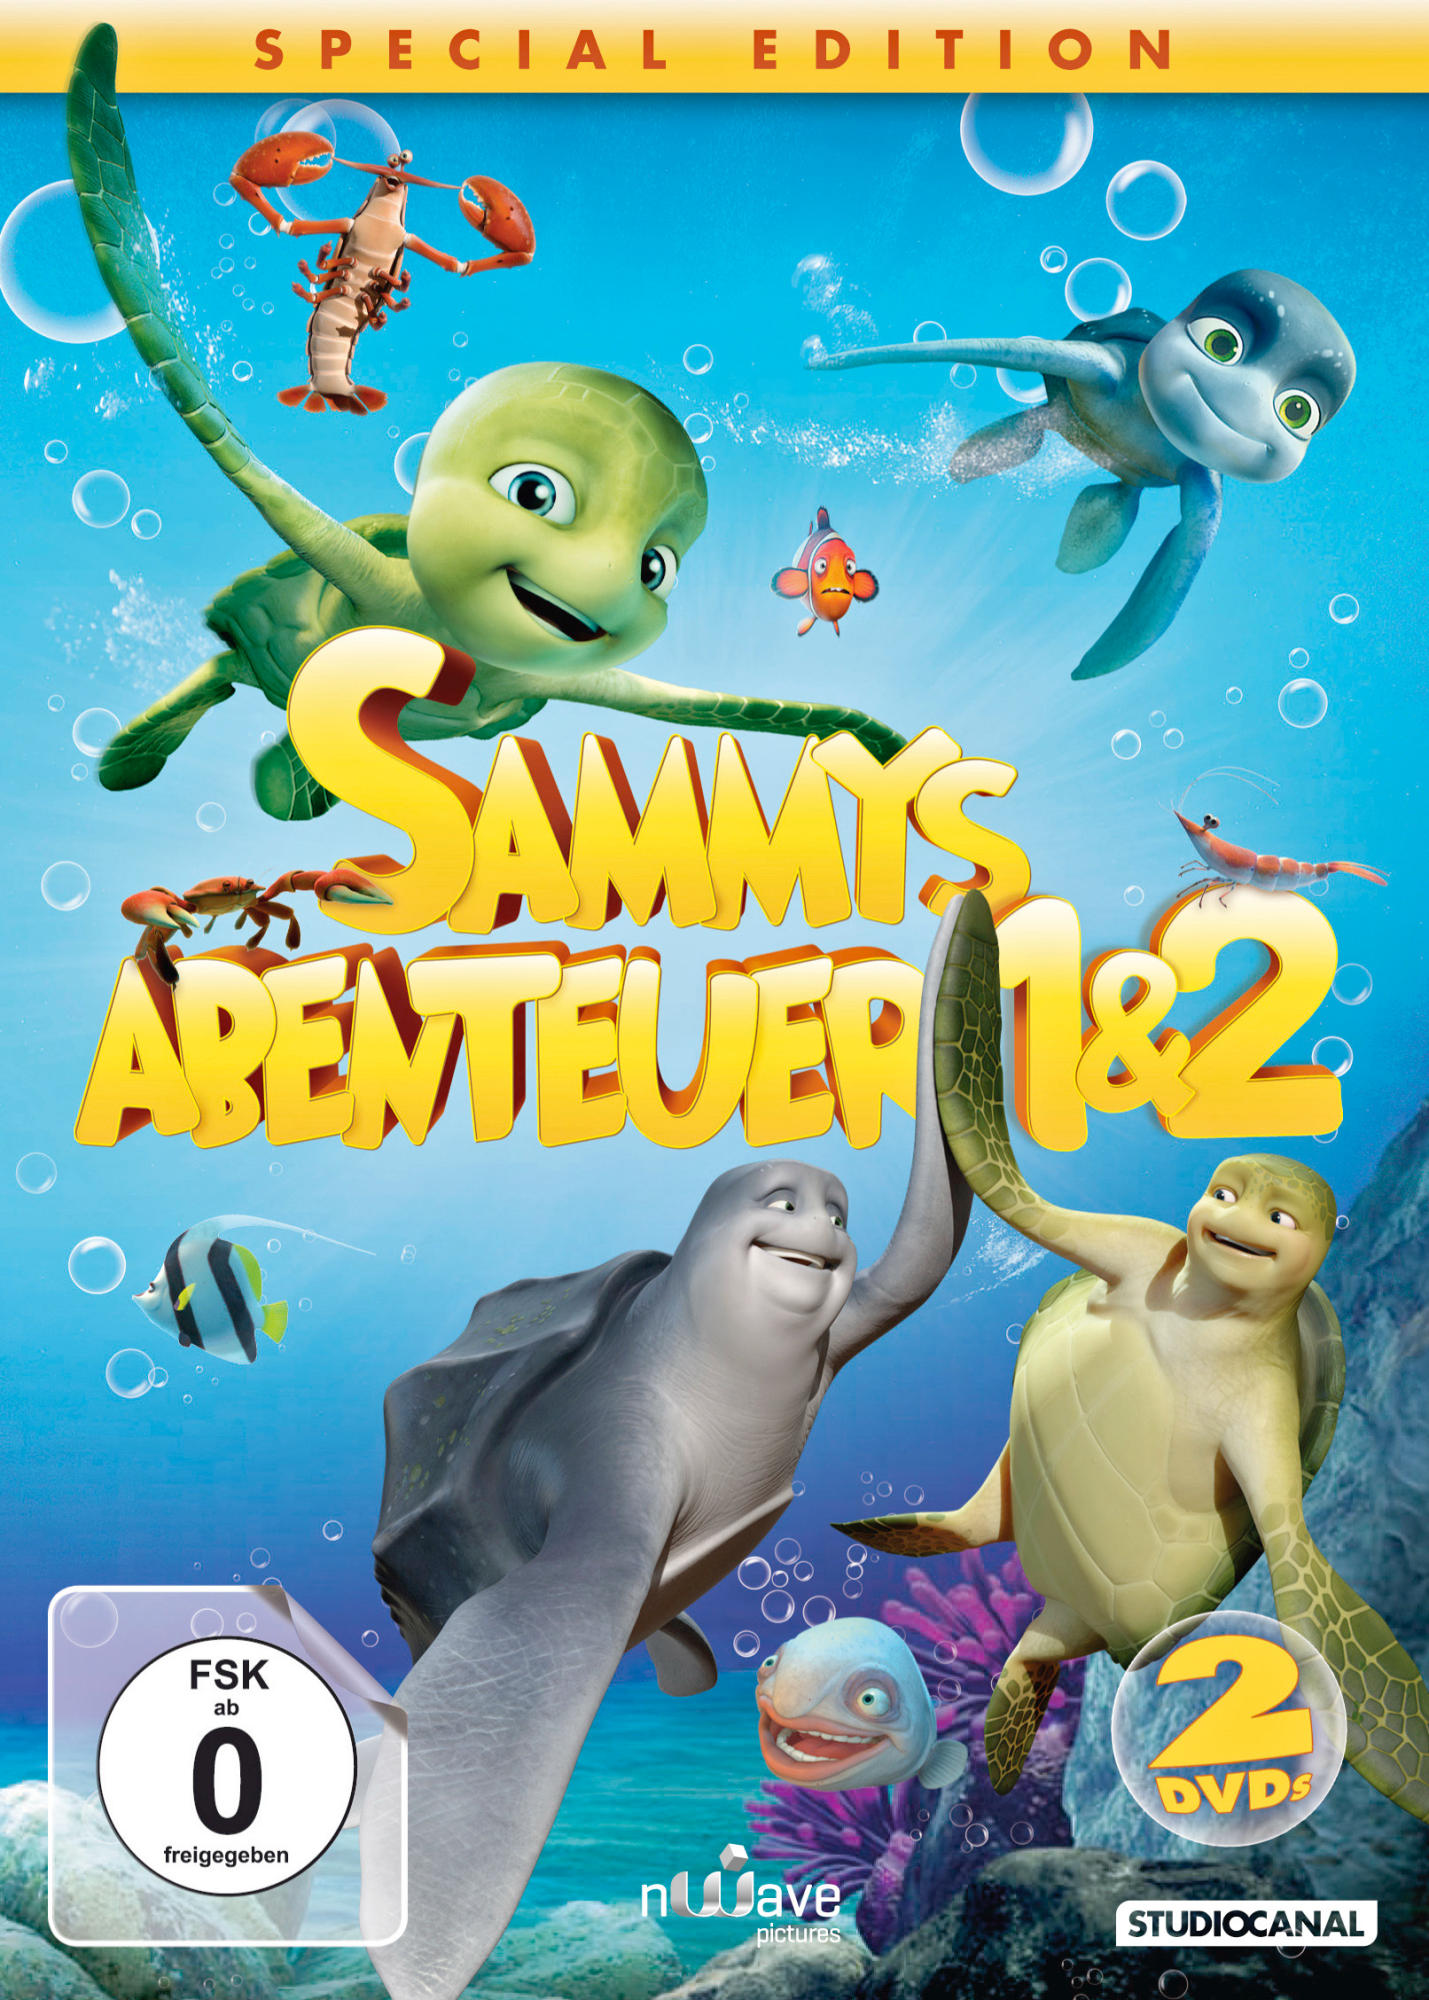 Sammys Abenteuer 1 & DVD 2